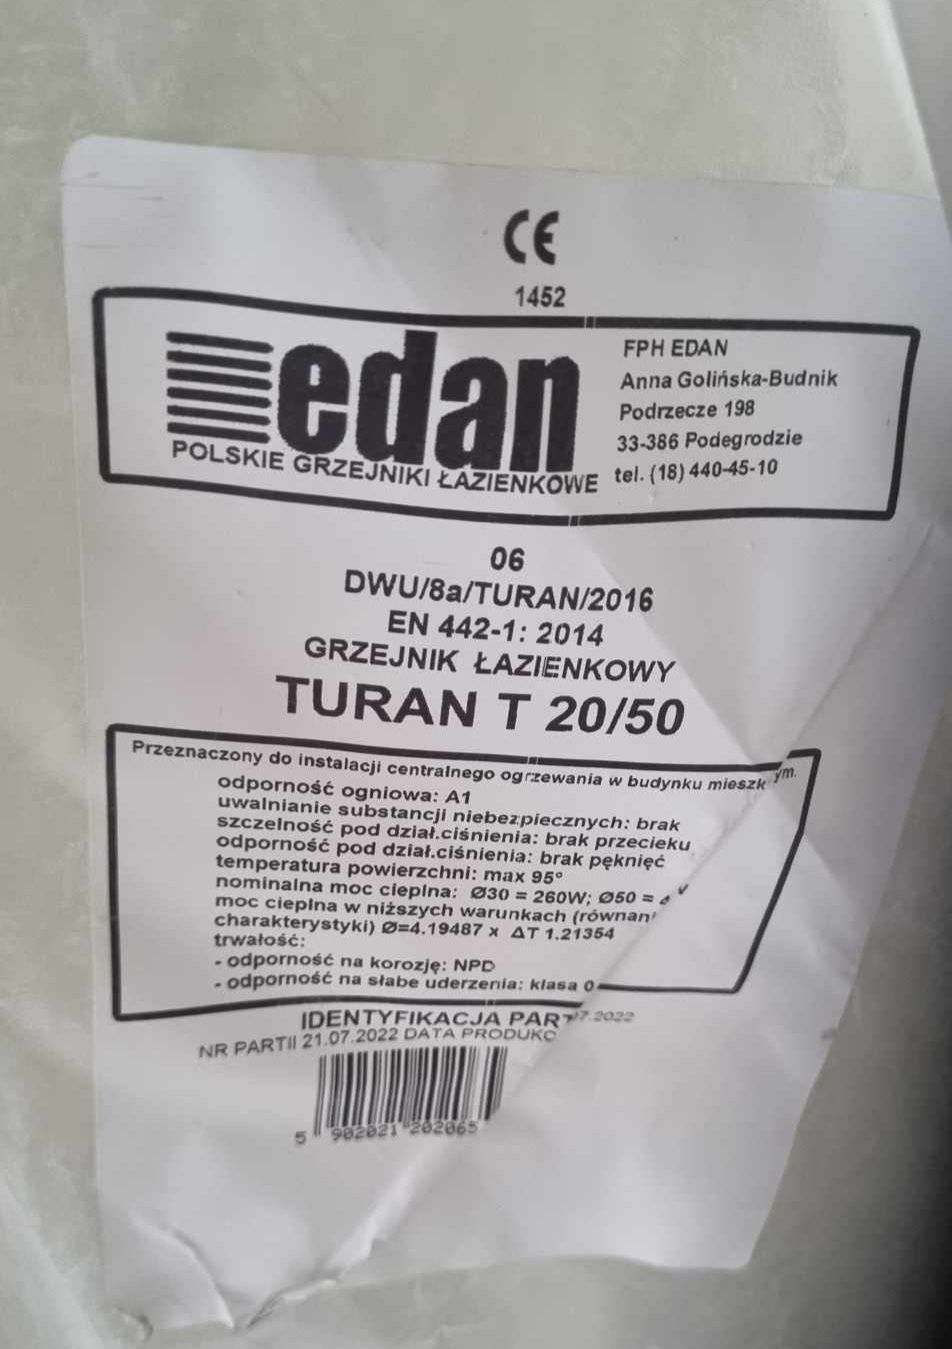 Grzejnik łazienkowy - Edan - Turan T 20/50